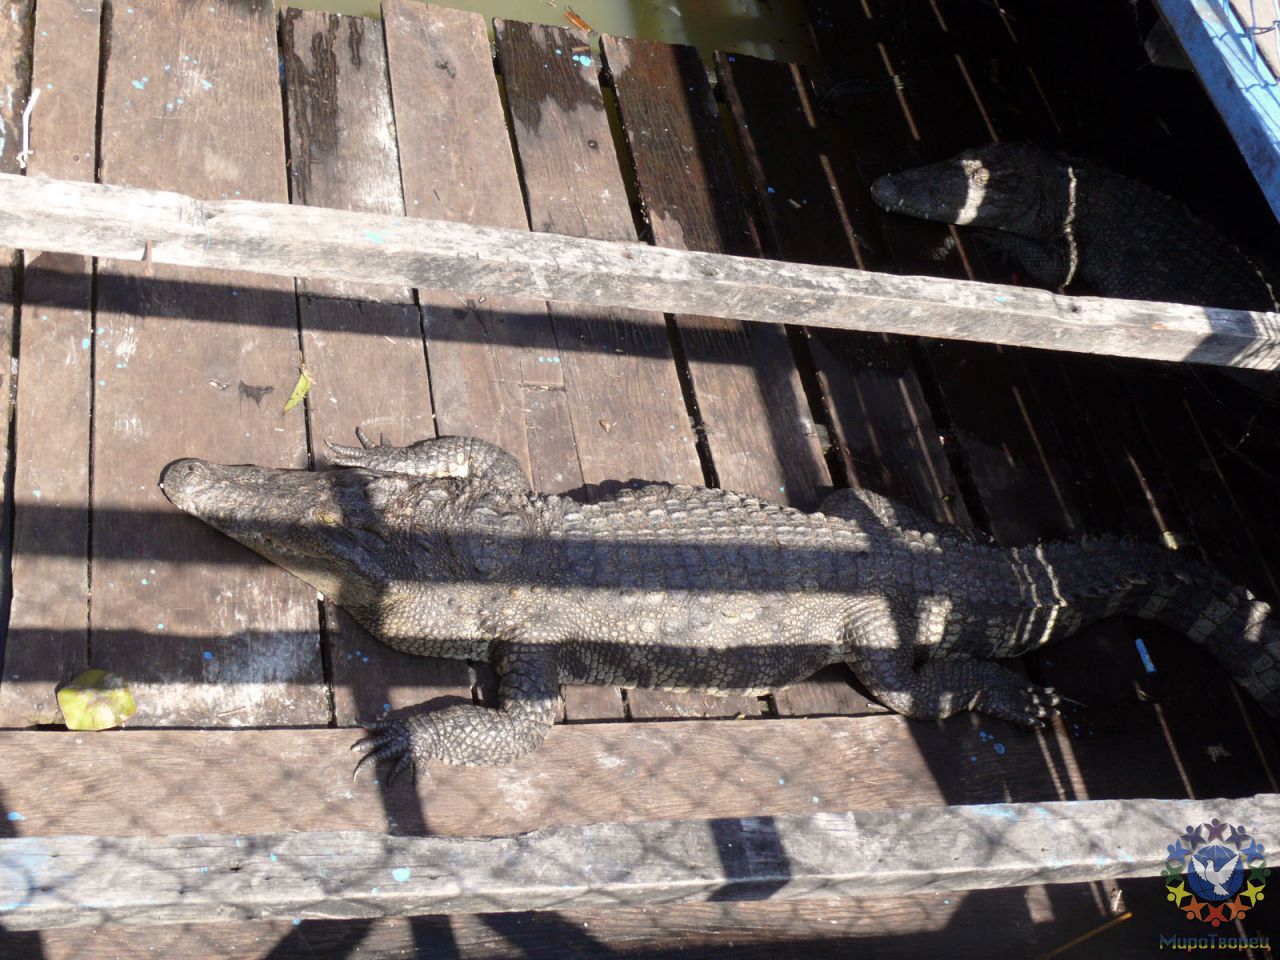 Озеро кишит крокодилами. Многие держат крокодилов в загонах. - Камбоджа декабрь 2010г.